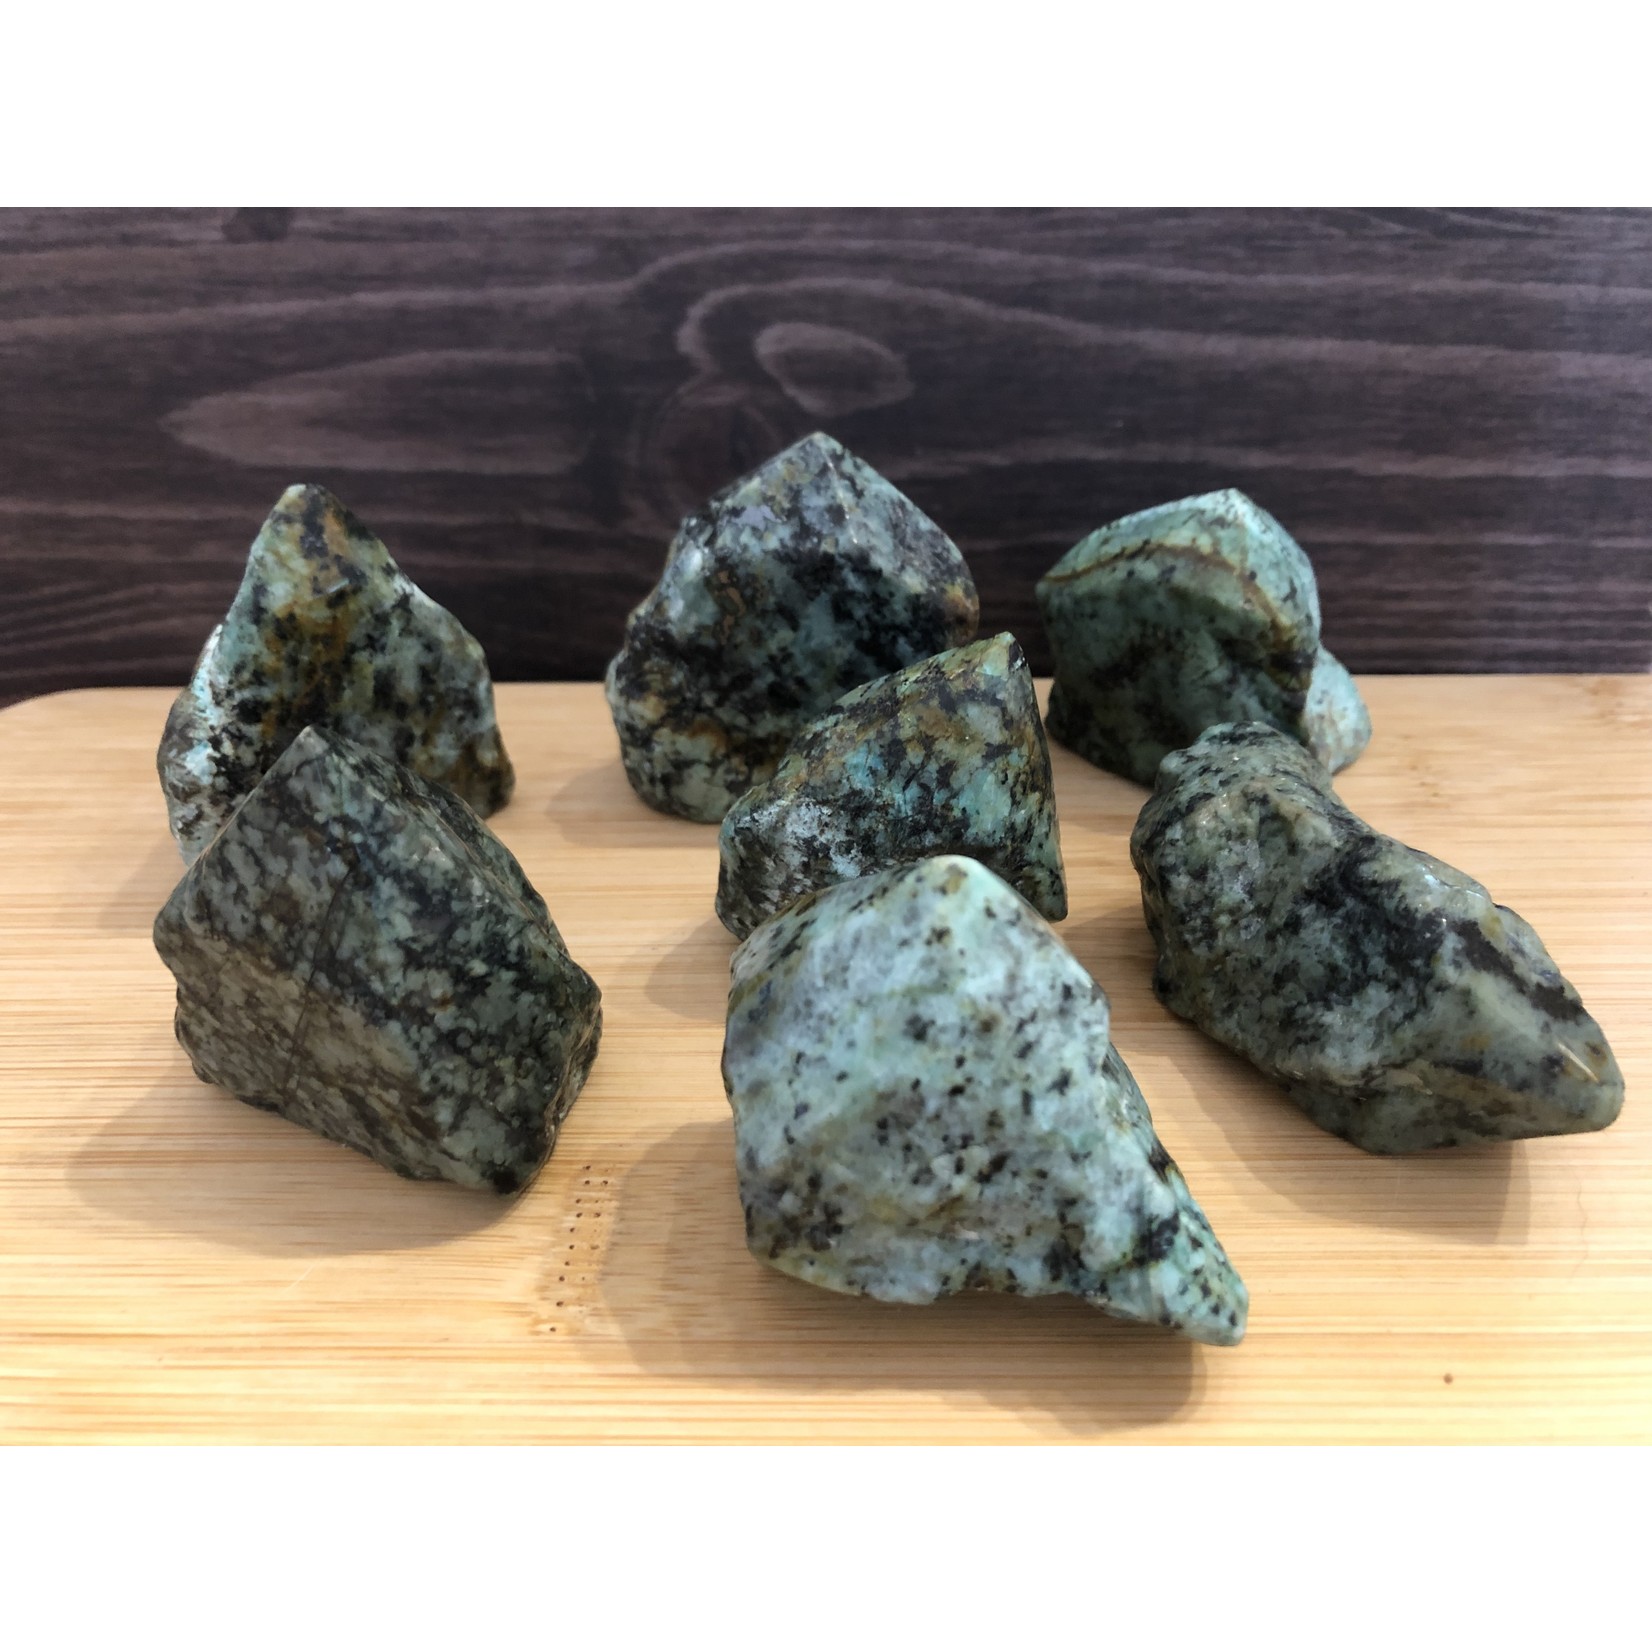 turquoise péruvienne naturelle, pointe de pierre turquoise, surface turquoise polie, apporte le calme et dissipe les peurs